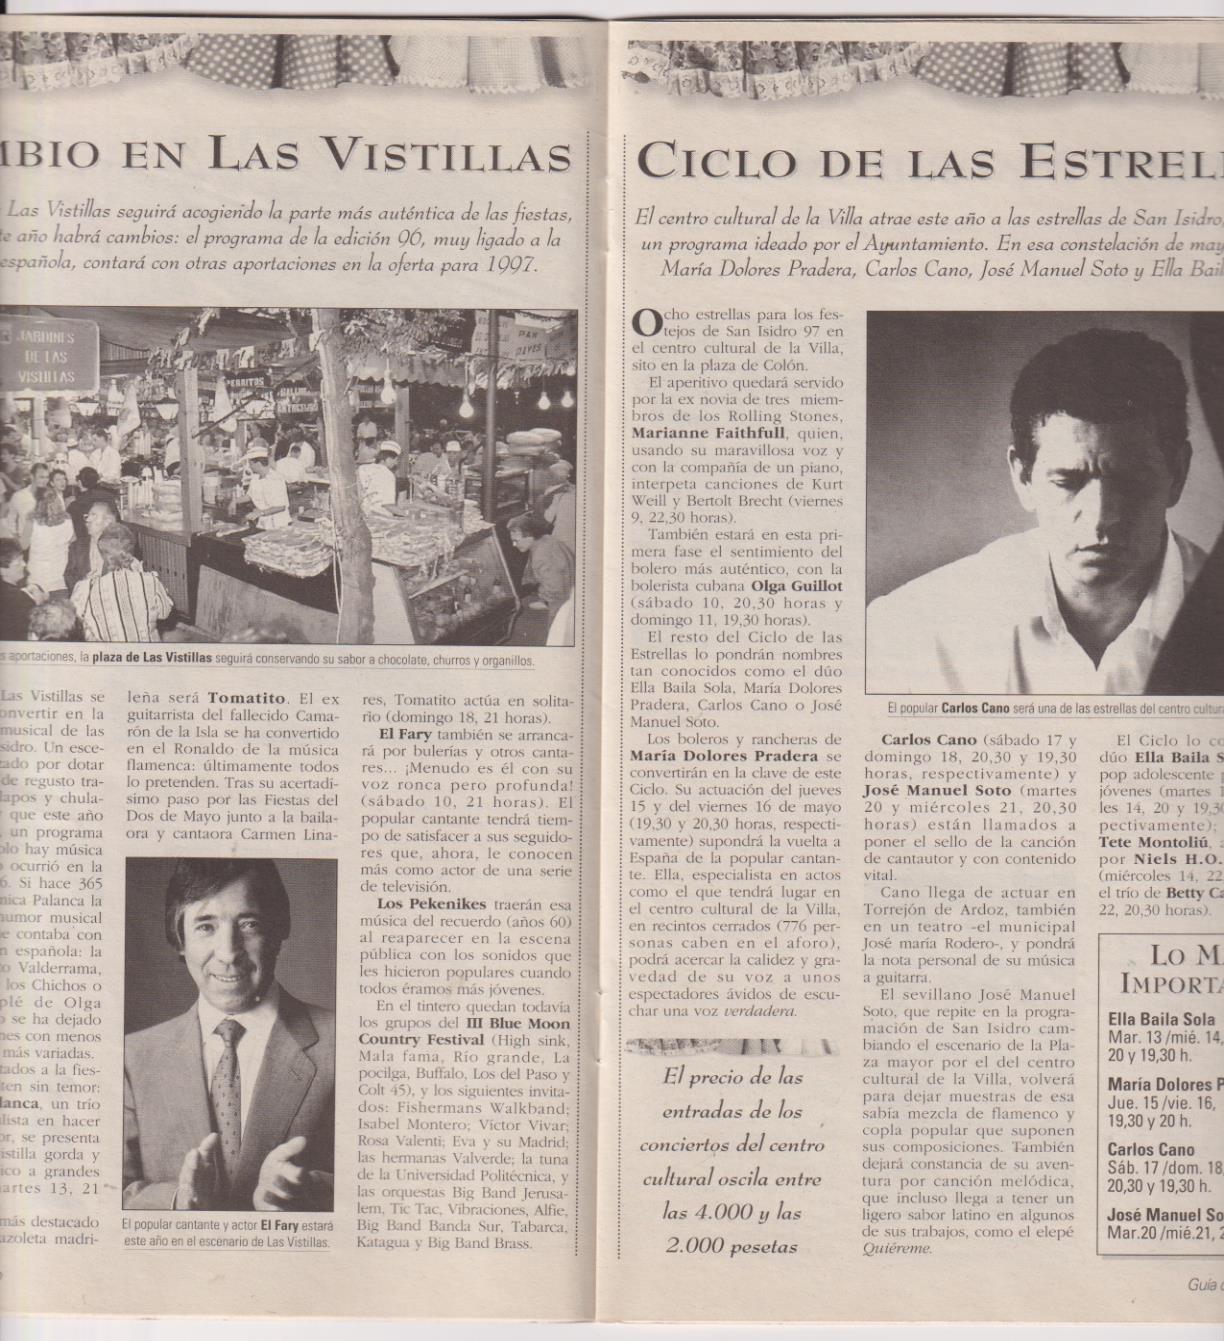 Guía del Ocio. La Feria de San Isidro 1997. 18 páginas